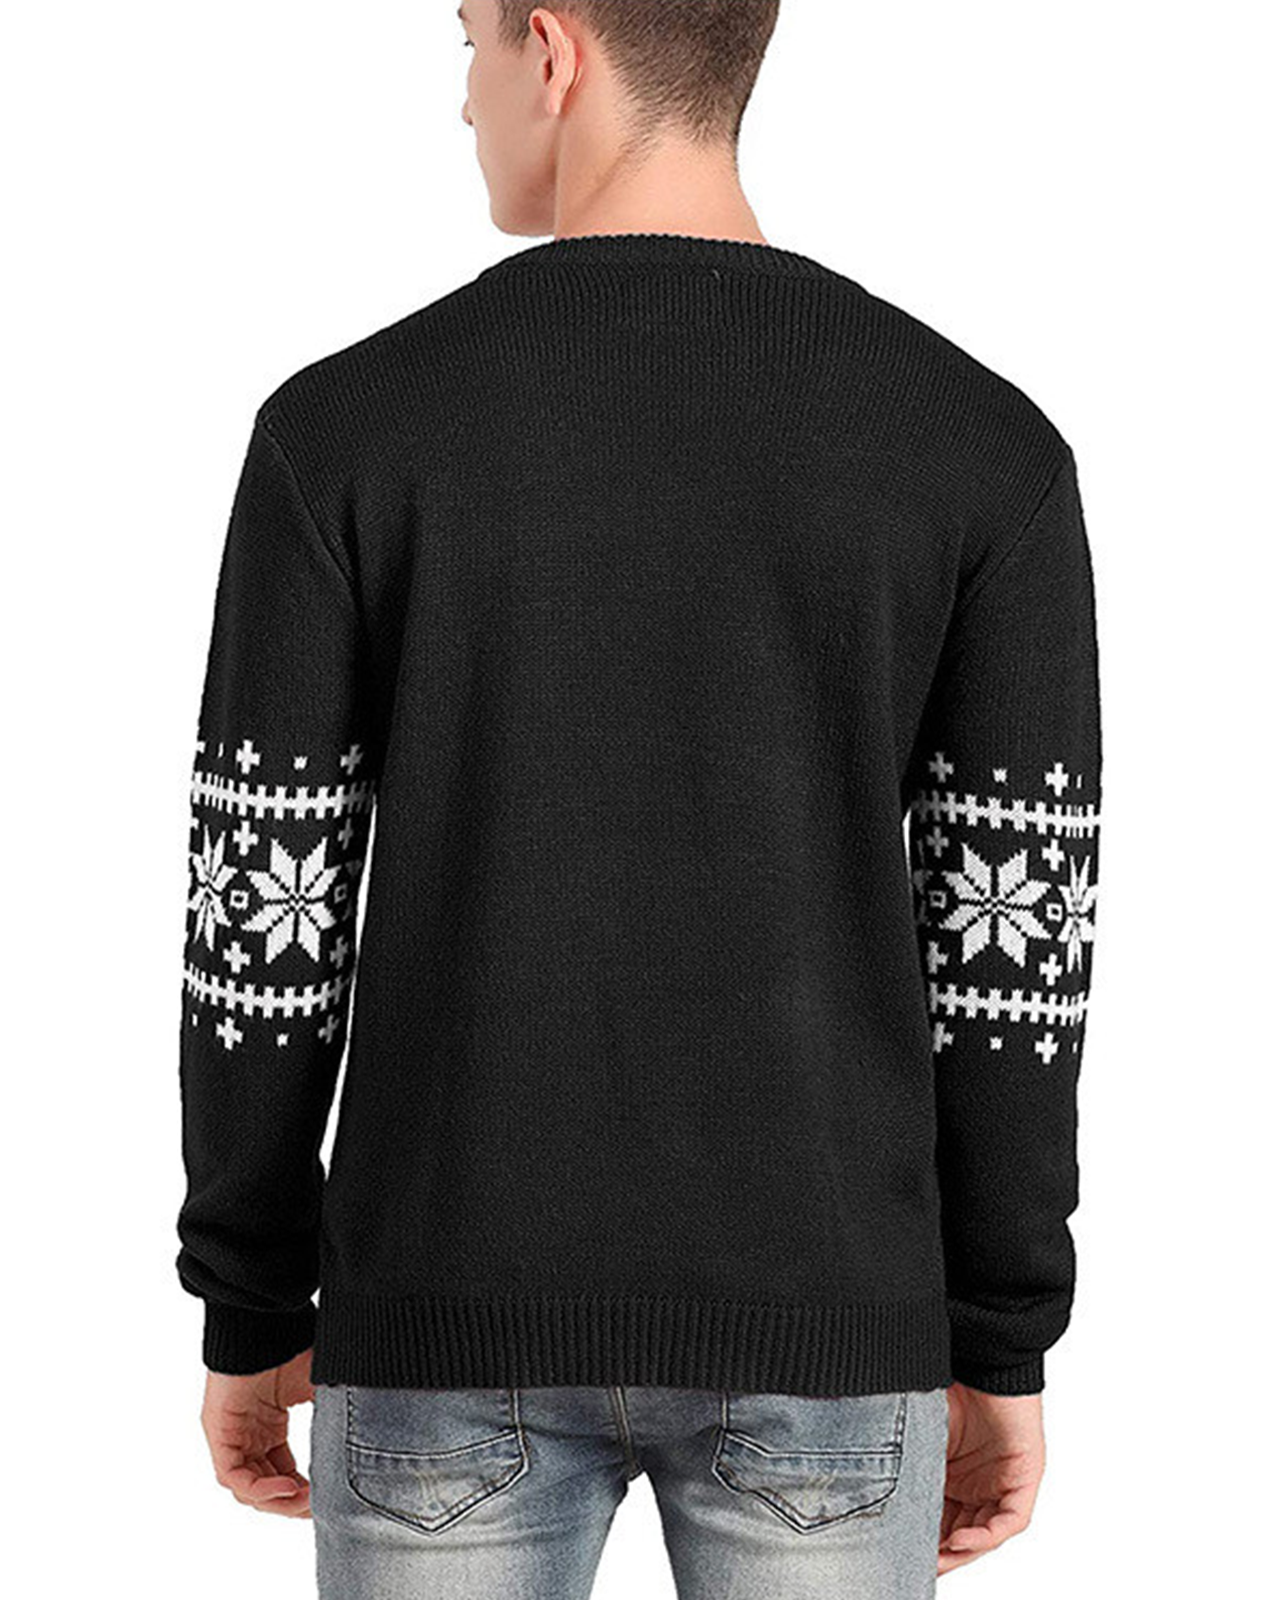 Deluxe Black Rudolph the Reindeer Sweater